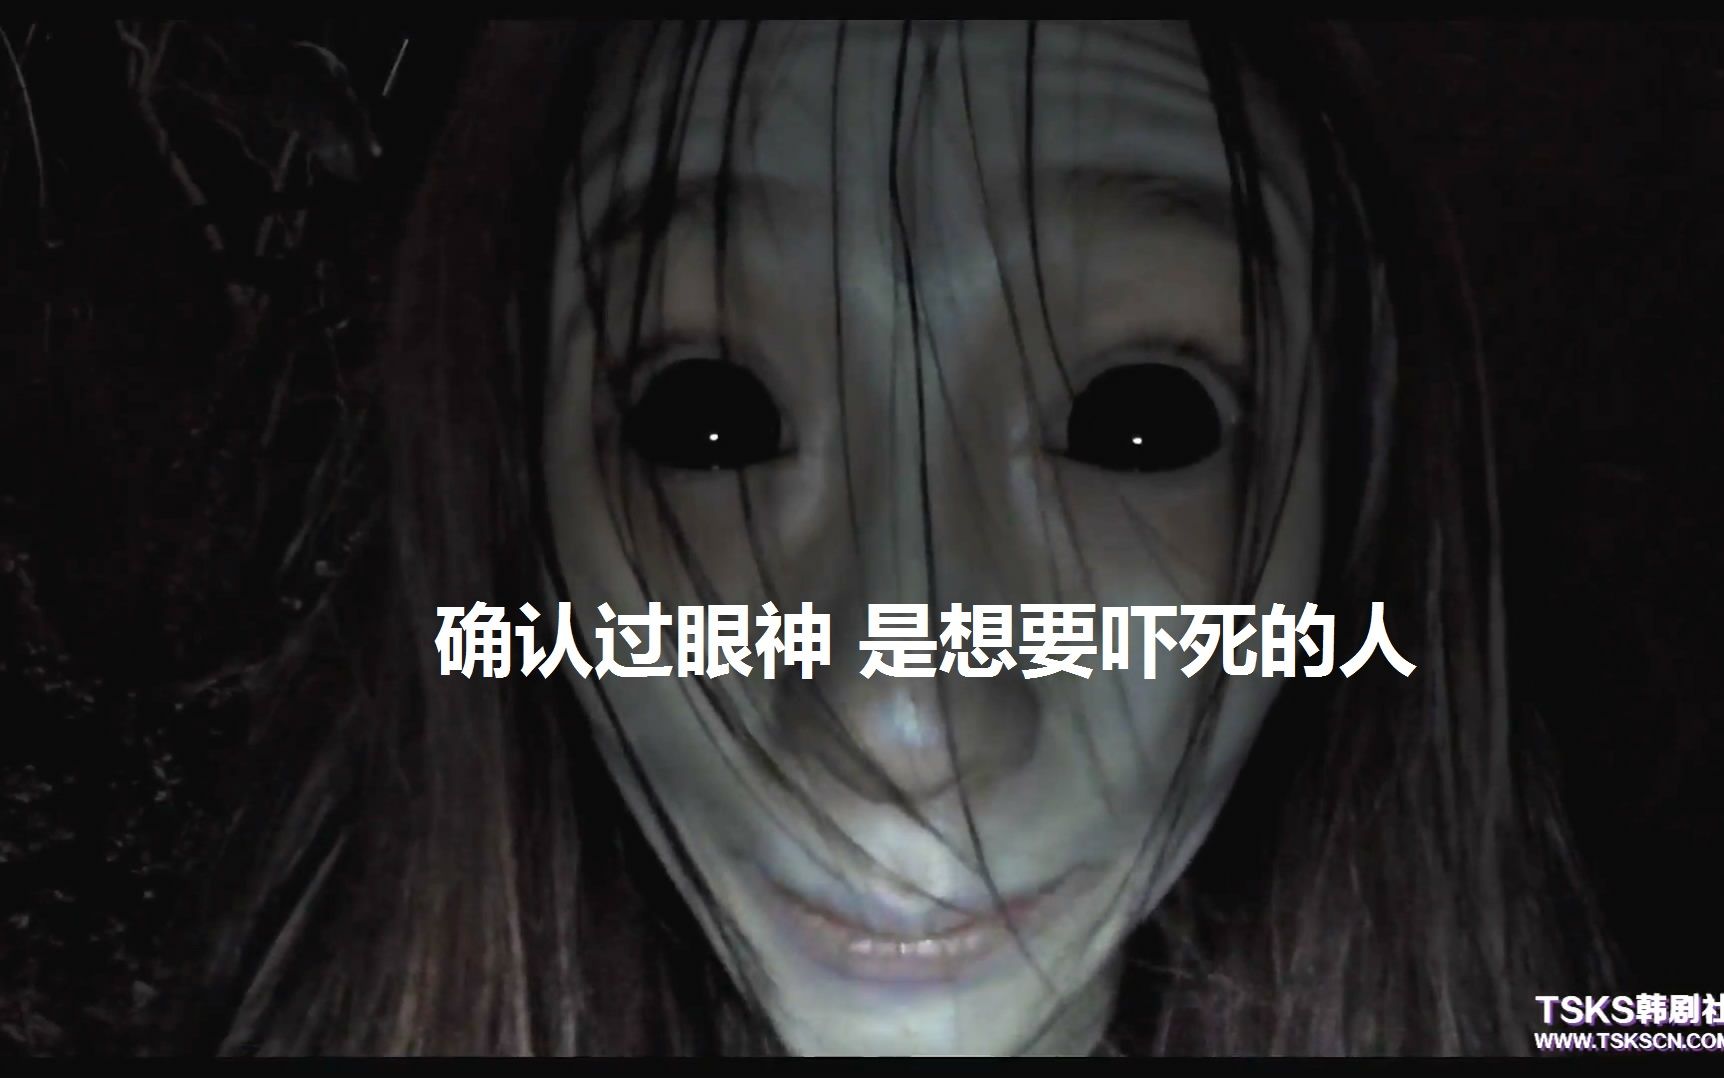 亚洲女鬼的特写脸和眼睛 库存照片. 图片 包括有 眼睛, 万圣节, 鬼魂, 夫人, 恐惧, 女孩, 女性 - 198694956